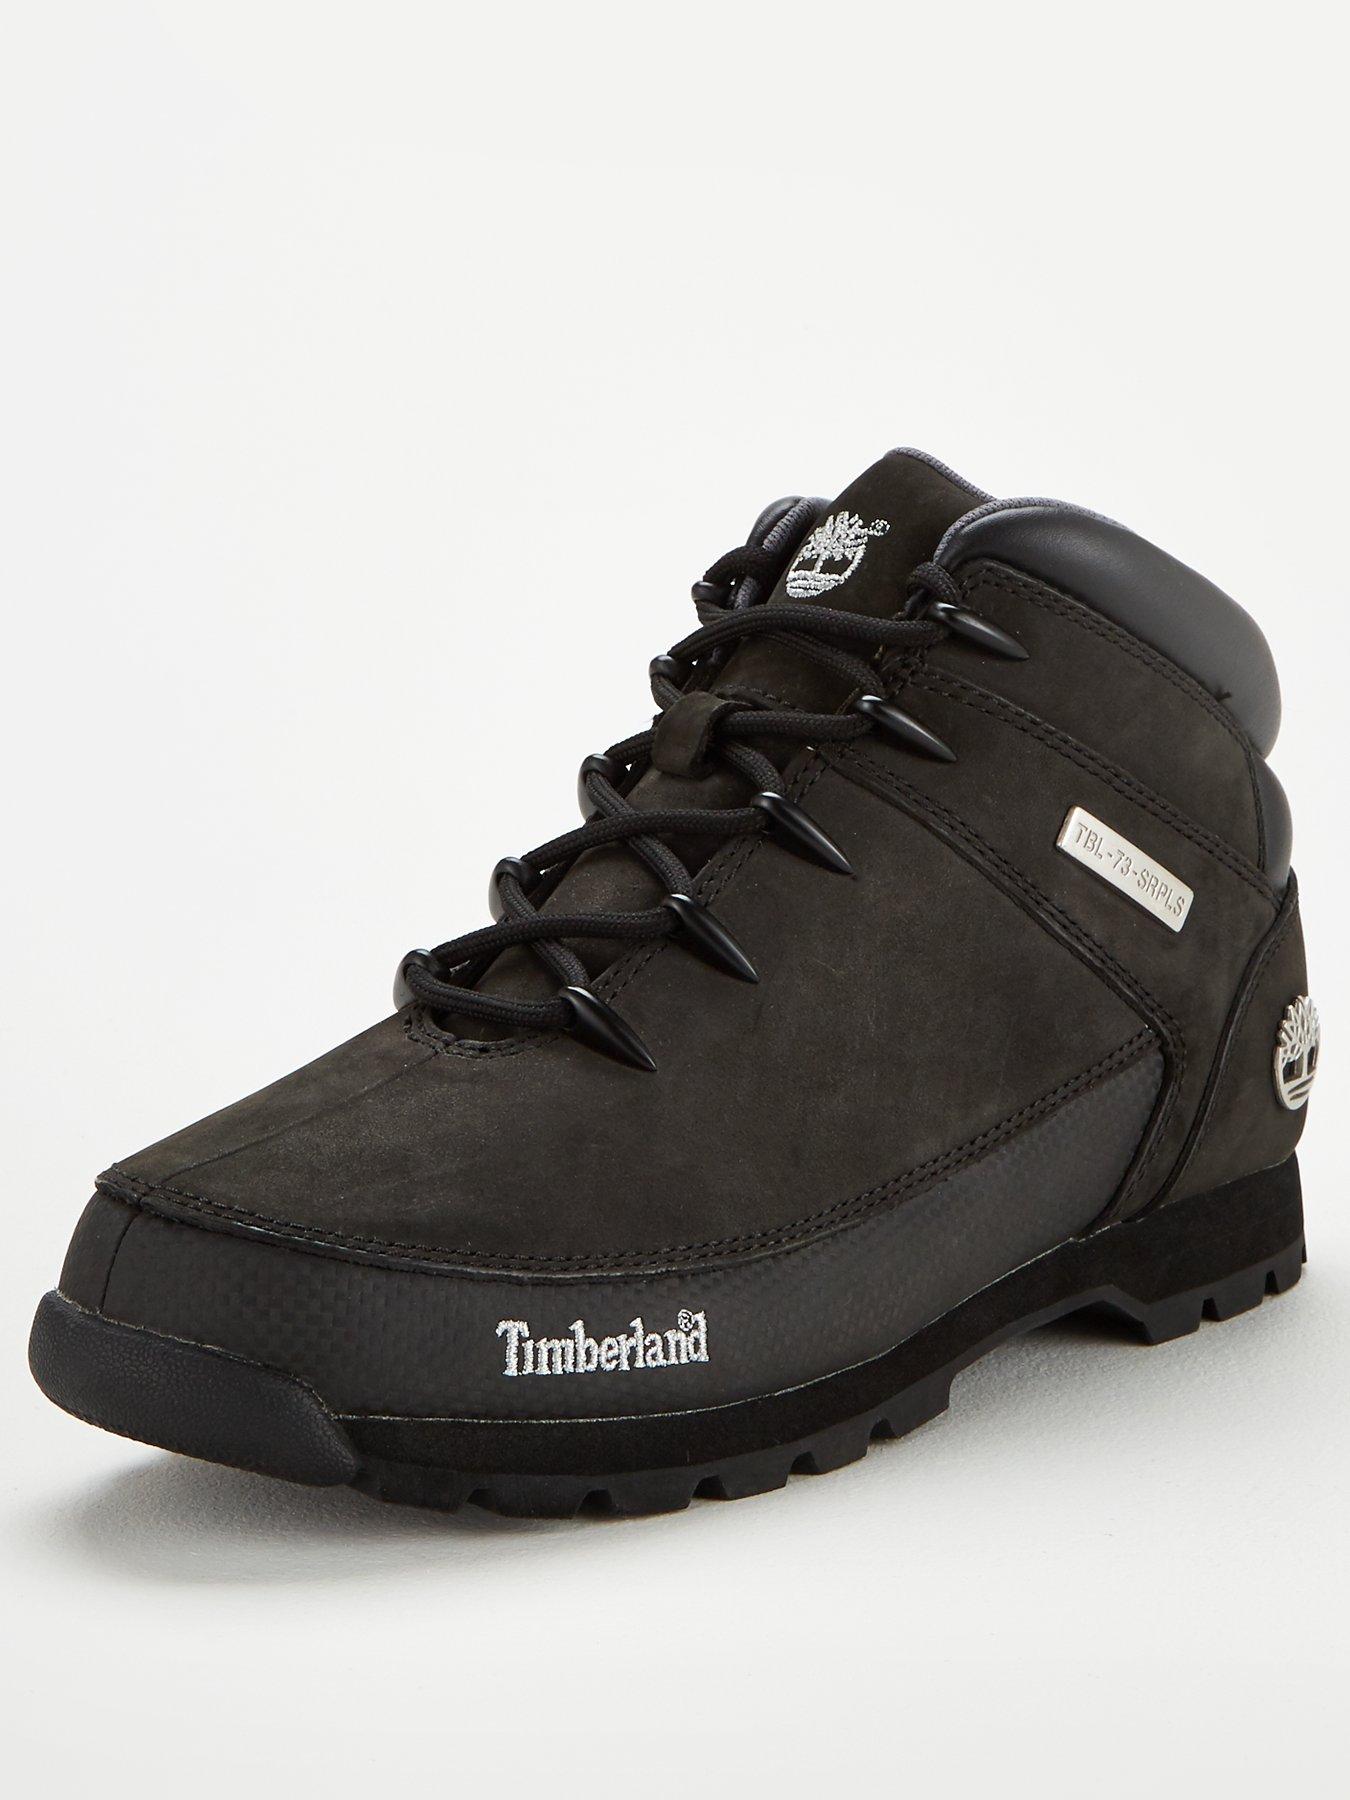 Timberland Euro Sprint Boot - Black | littlewoods.com